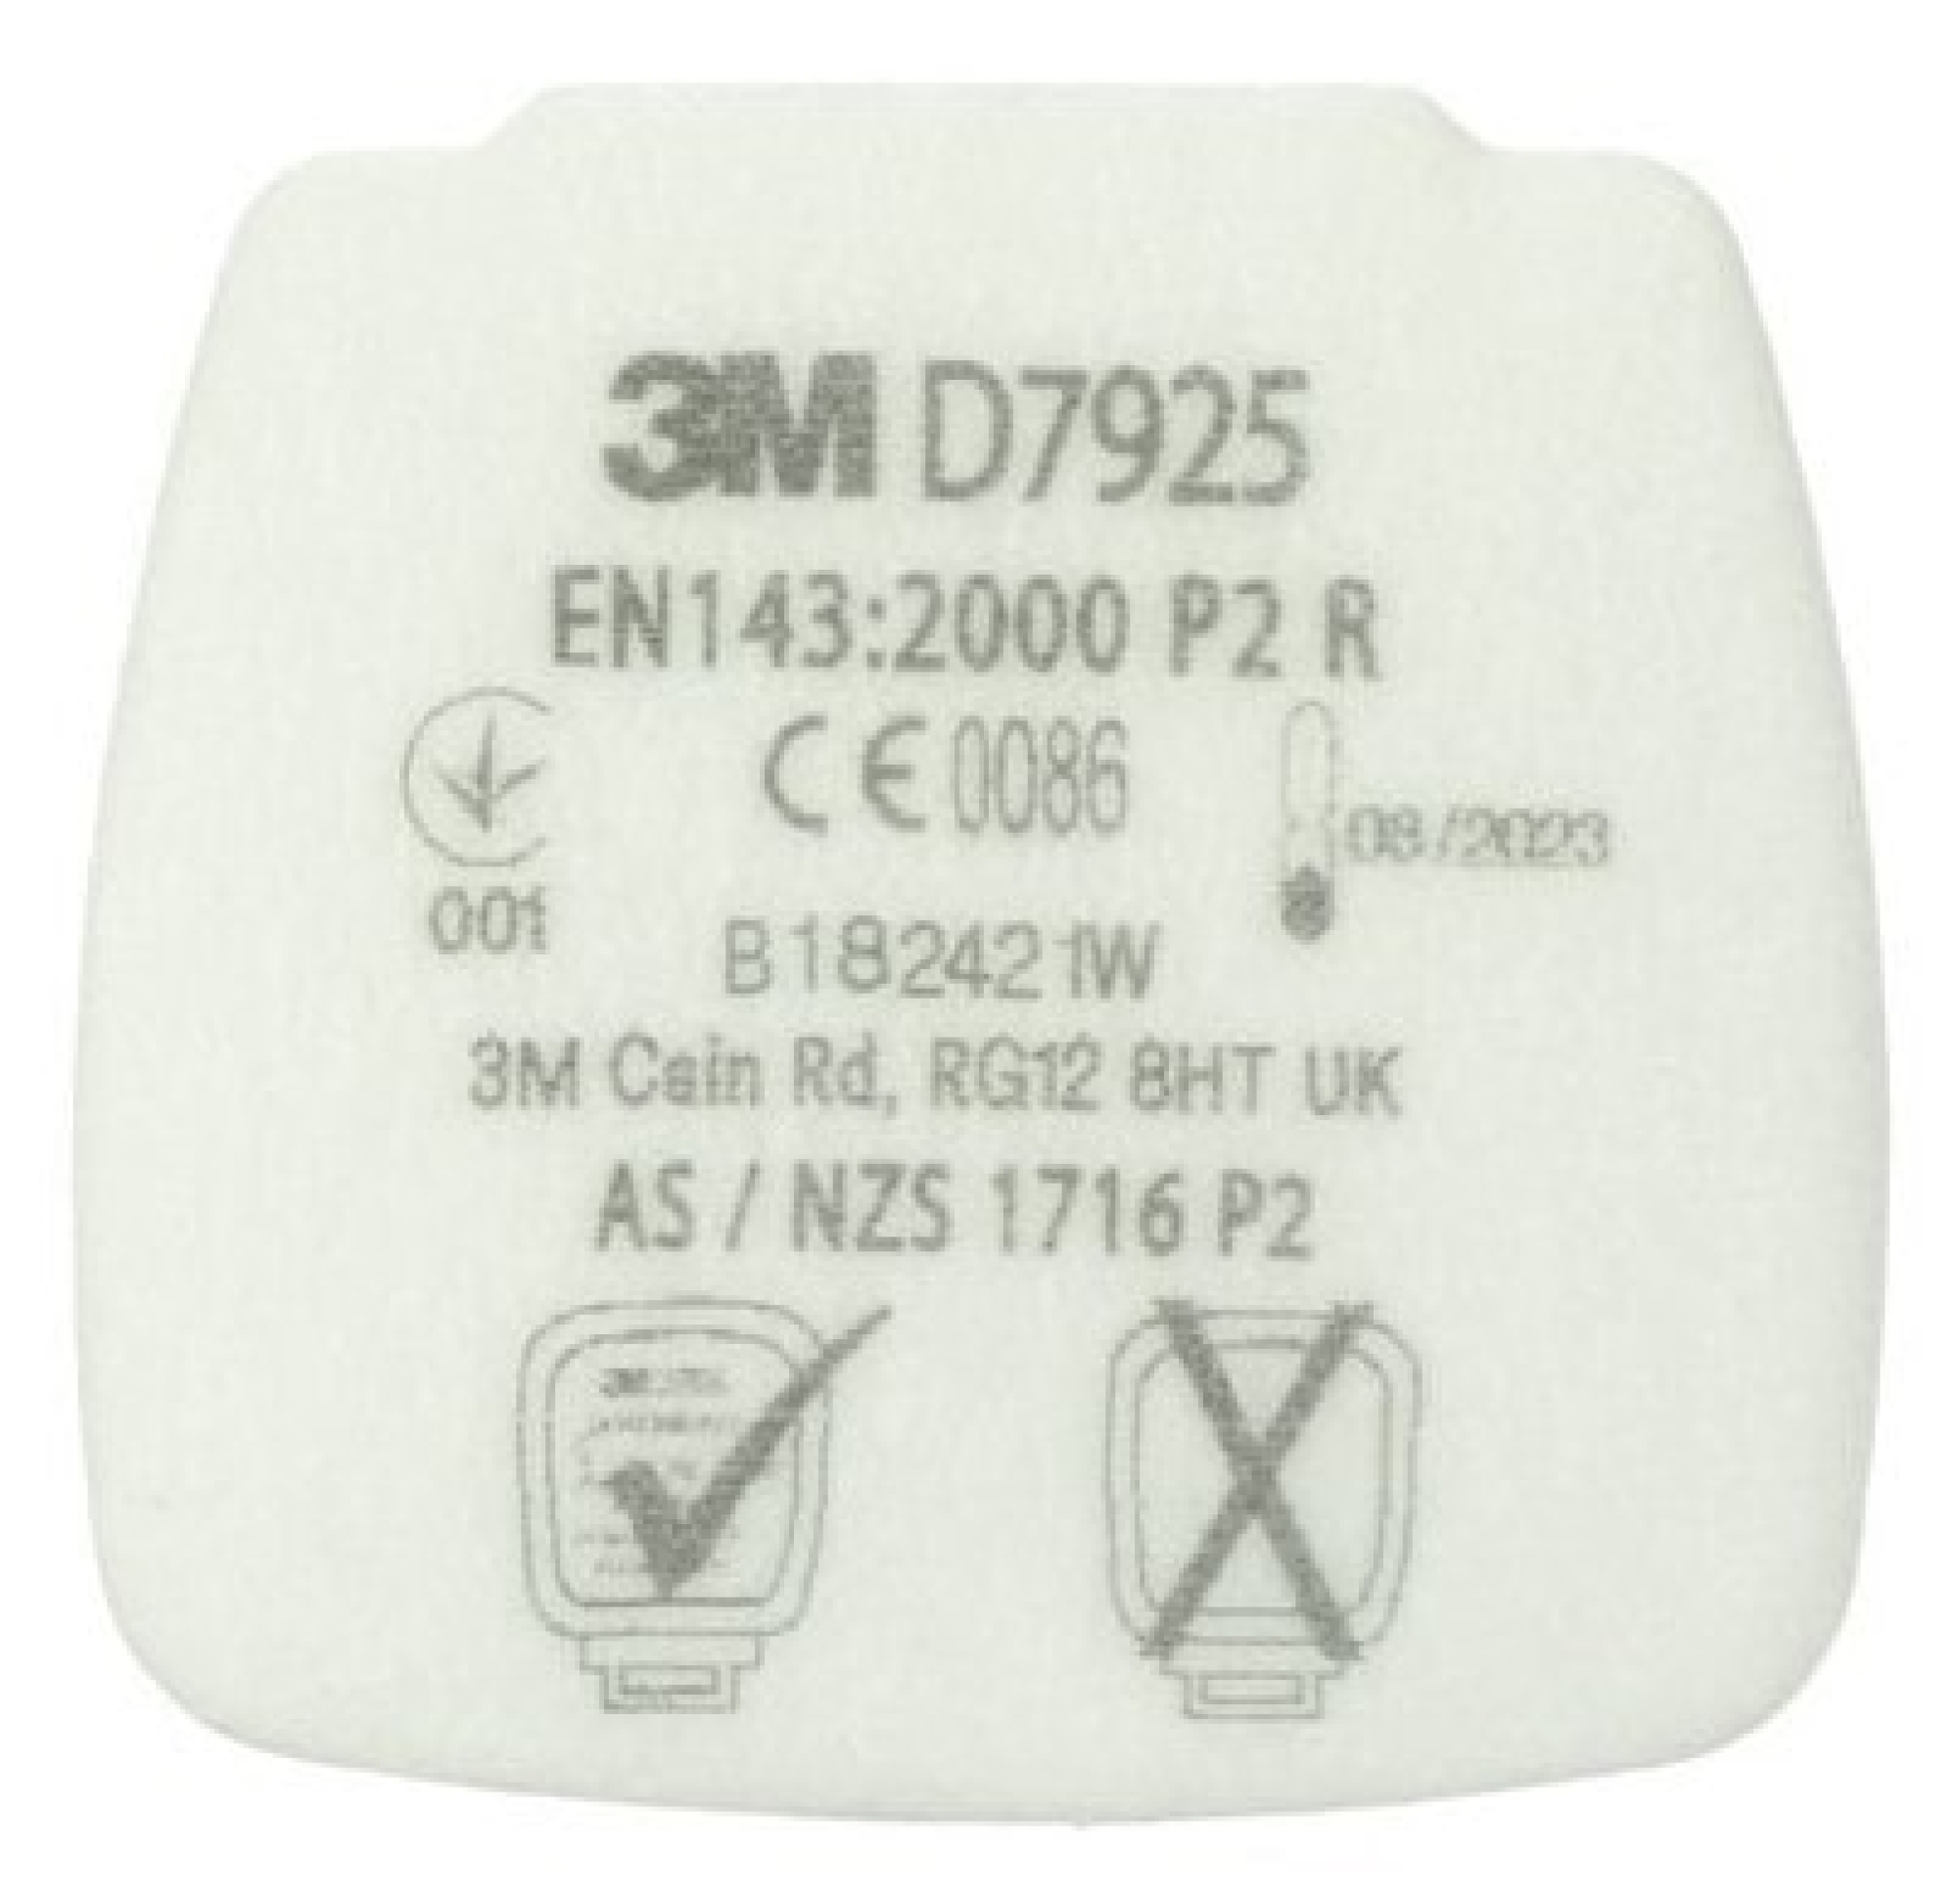 3M™ Secure Click™ Partikel-Einlegefilter D7925, P2 R, Kompatibel zu 3M™ D701 Filterdeckel, Einlegefilter gegen feste & flüssige Partikel